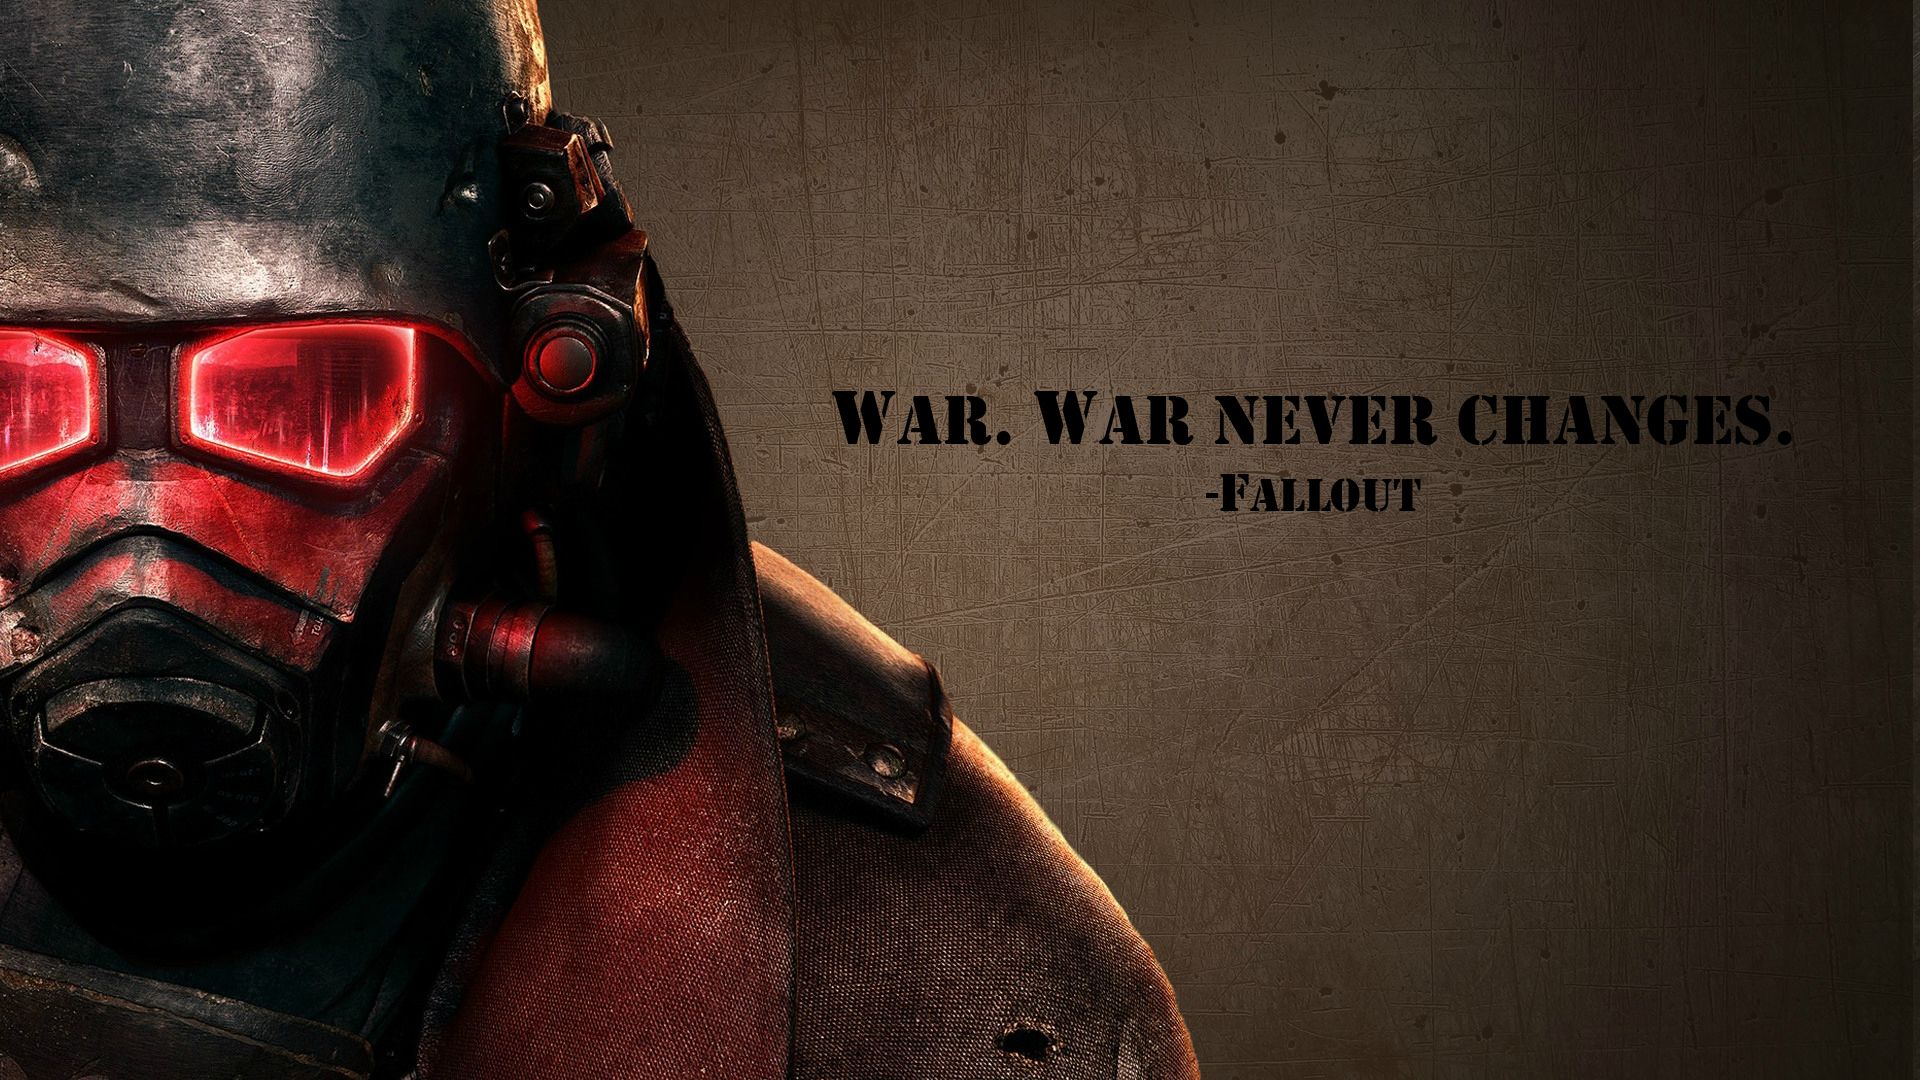 Fallout Wallpaper War